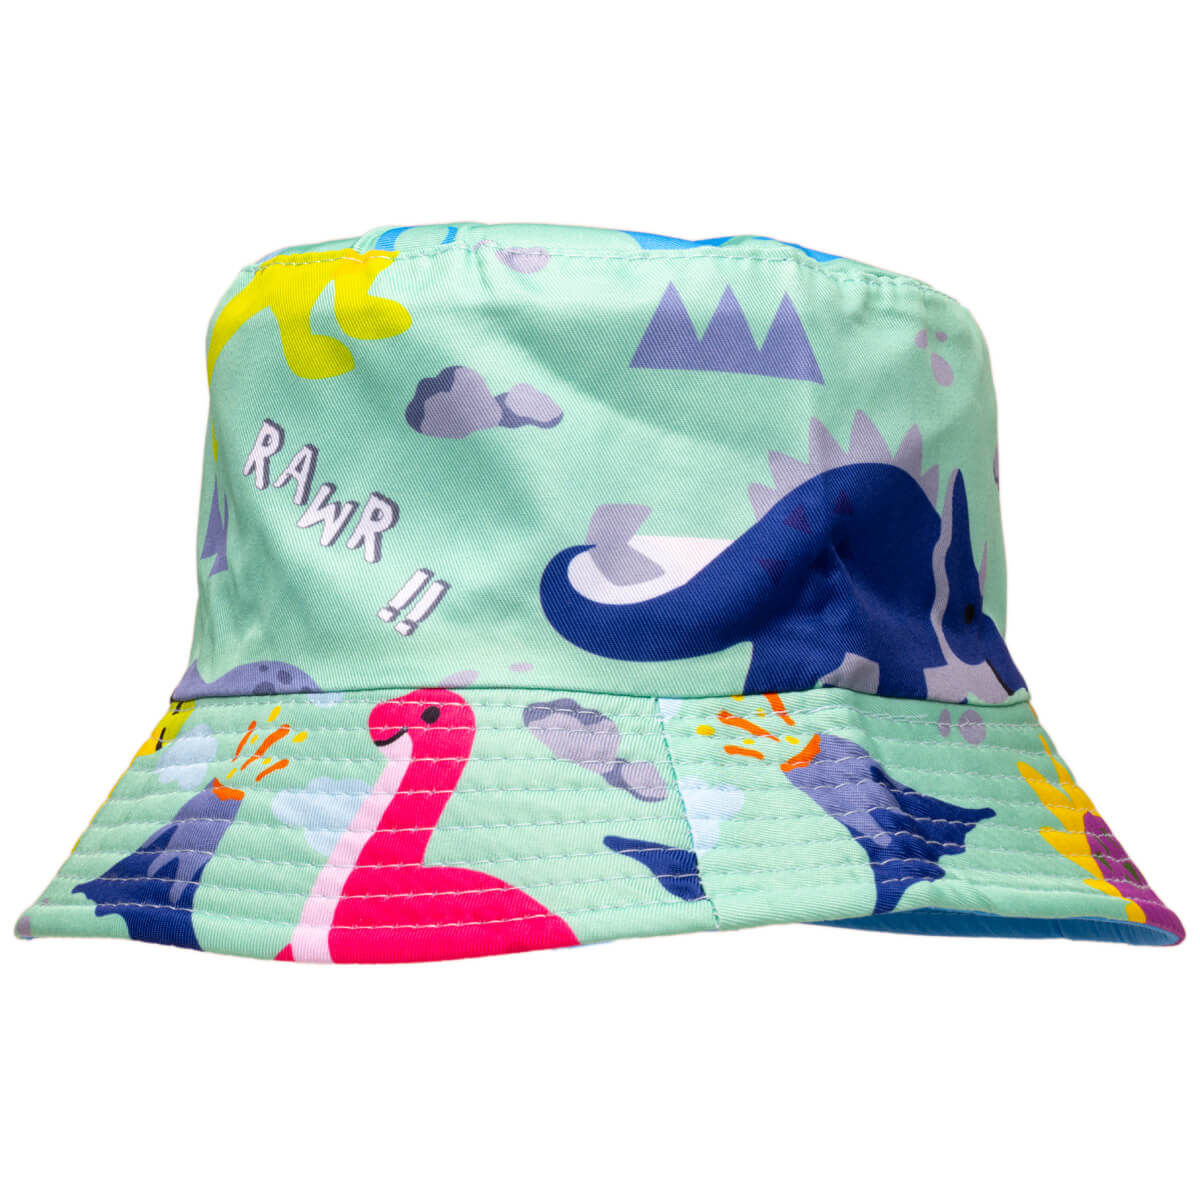 Dinosaurus children's fishing hat reversible